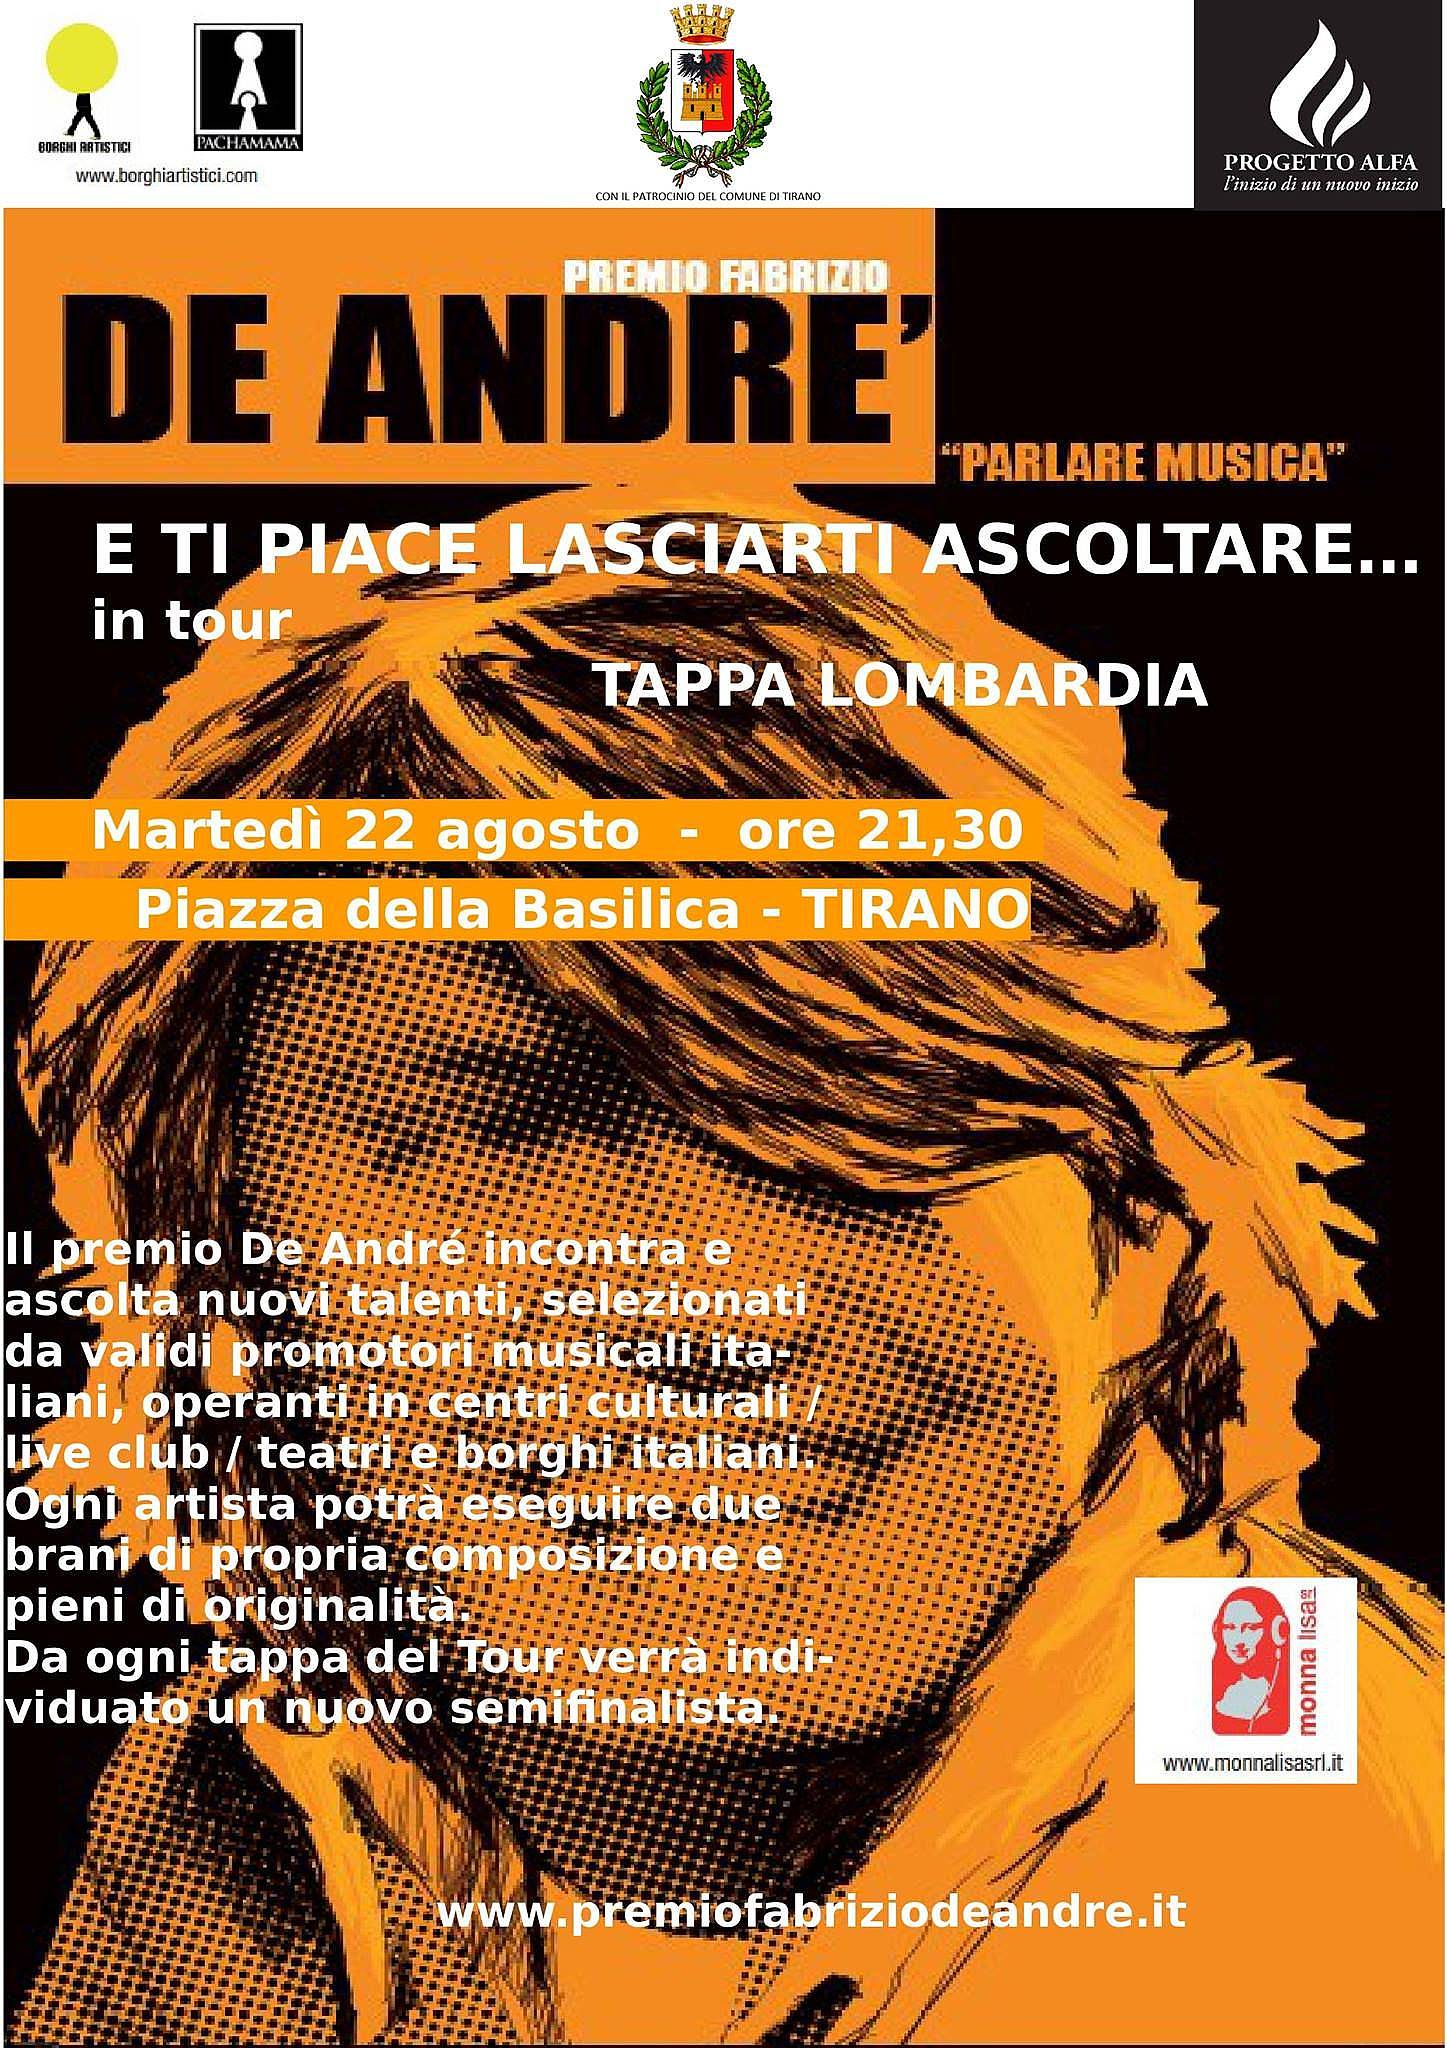 Premio Fabrizio De Andre'